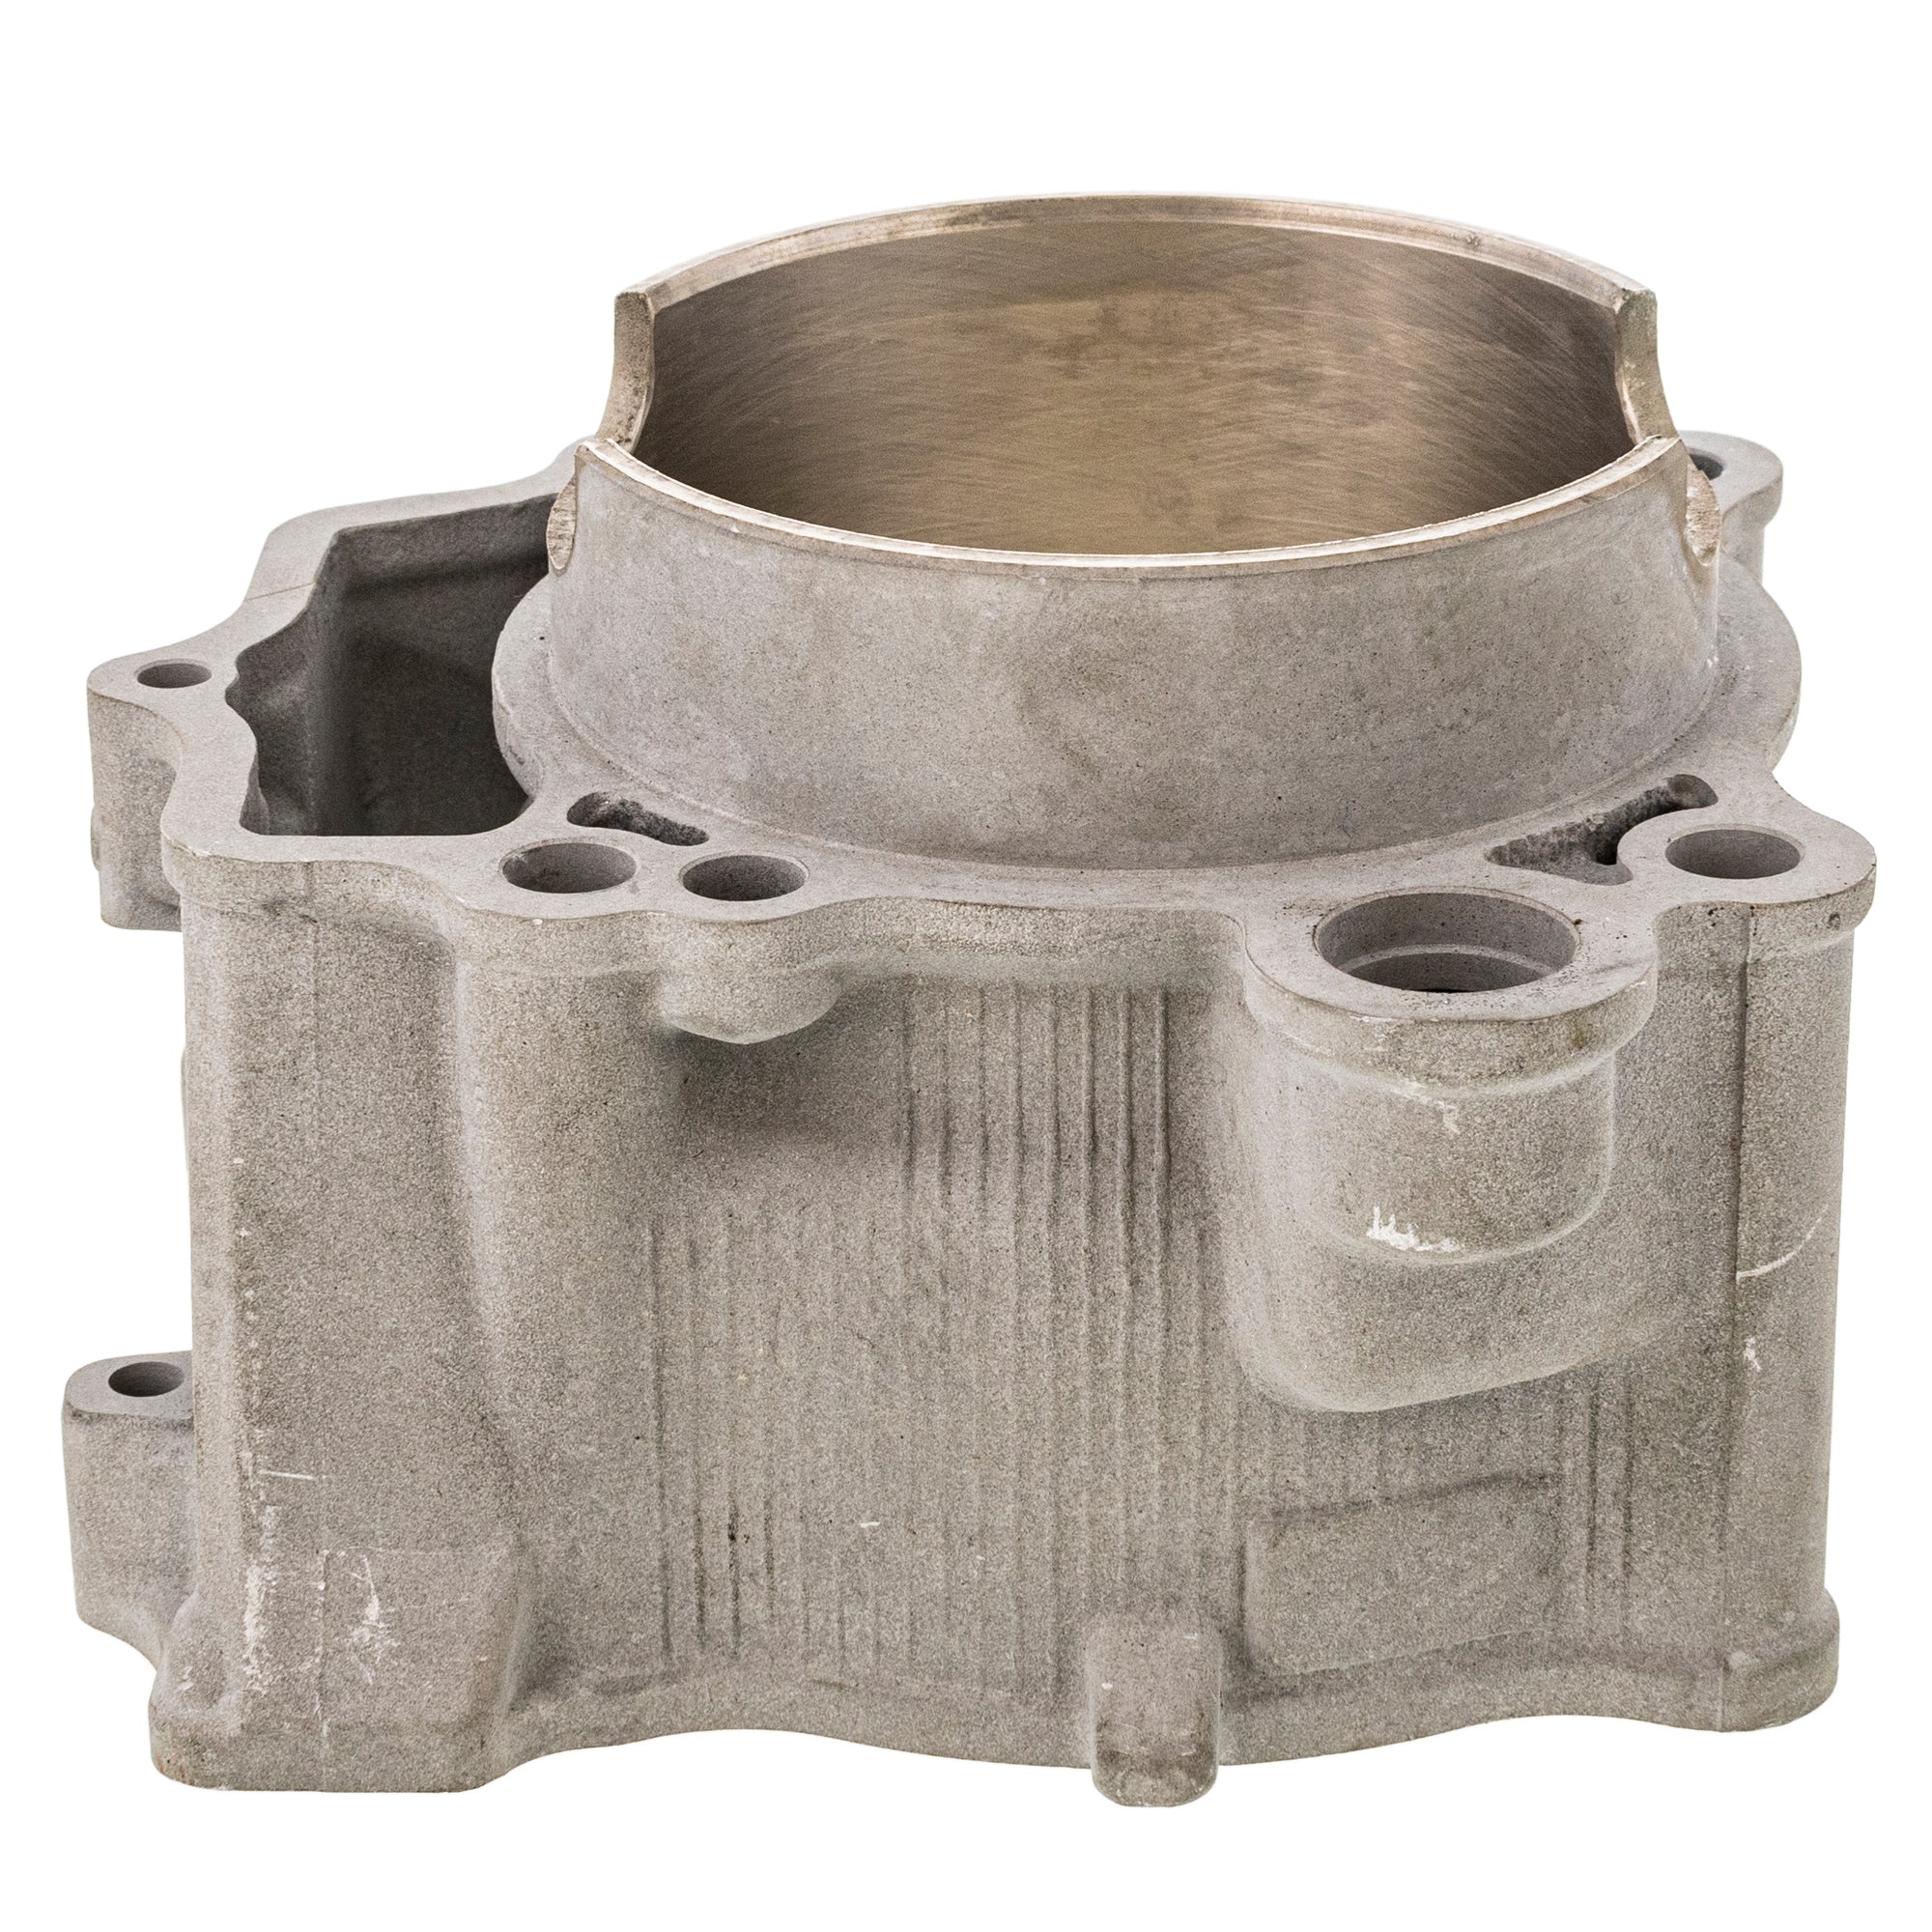 Engine Cylinder For Yamaha 5TA-11311-12-00 5TA-11311-11-00 5TA-11311-10-00 5TA-11311-02-00